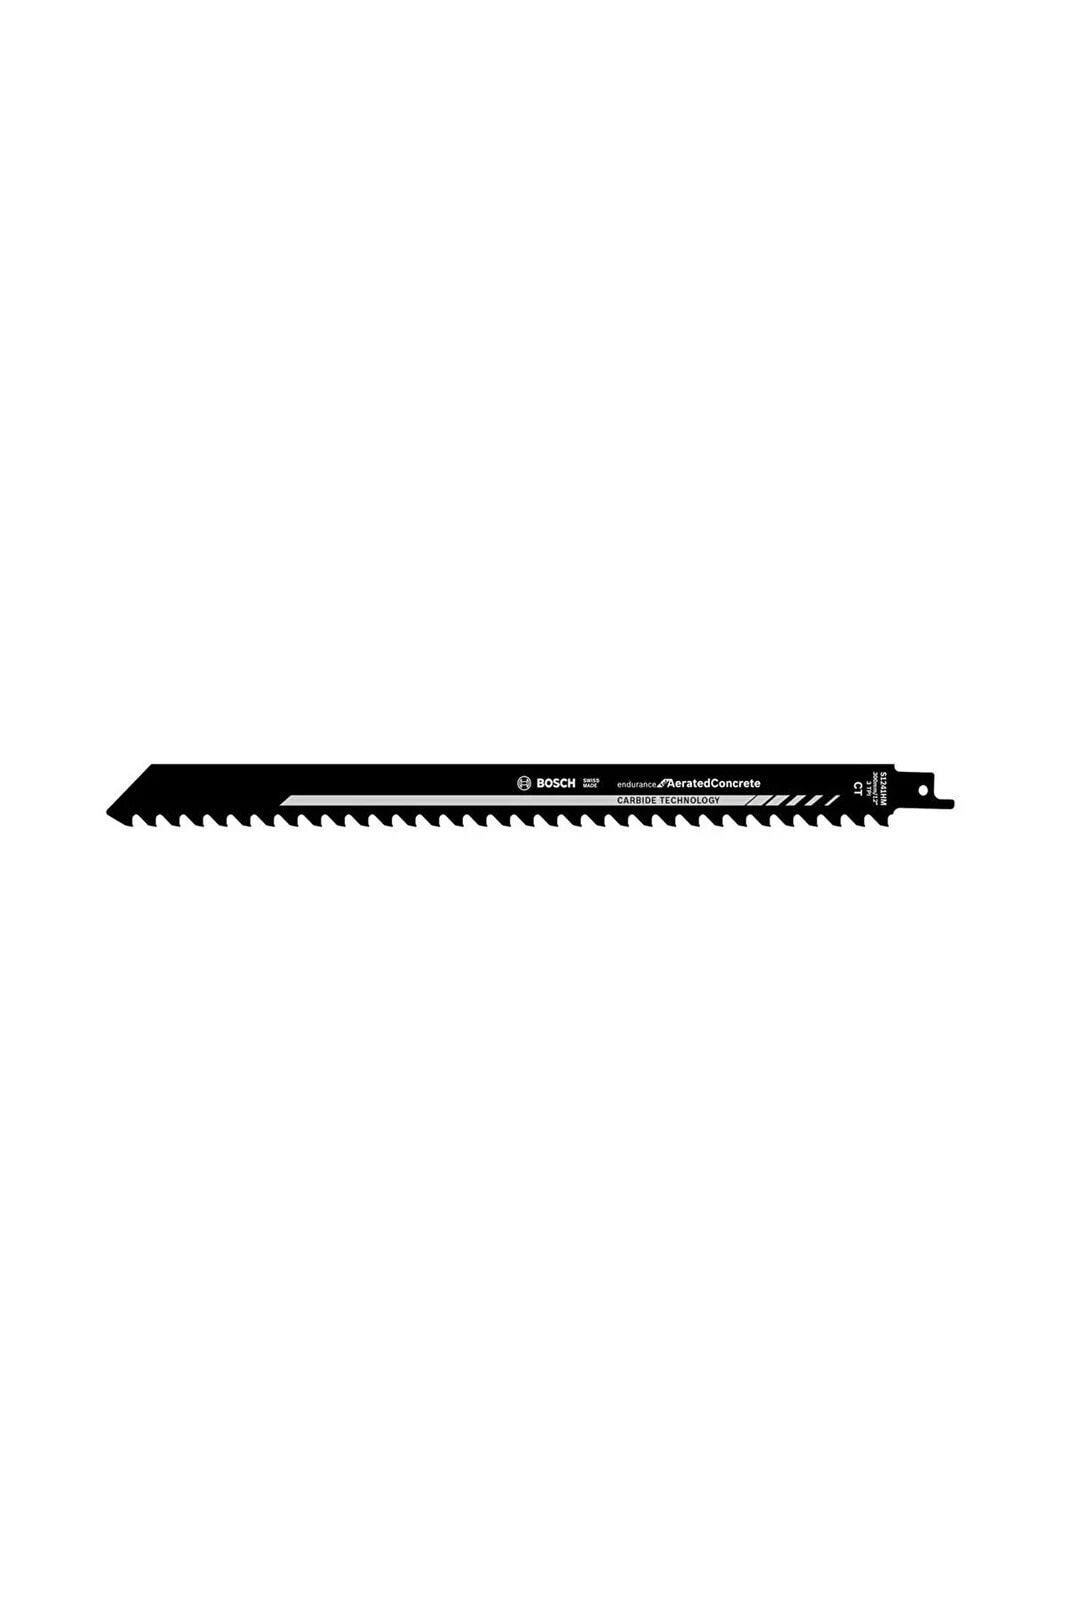 S 1241 Hm Gazbeton - Bims - Tuğla Tilki Kuyruğu Bıçağı